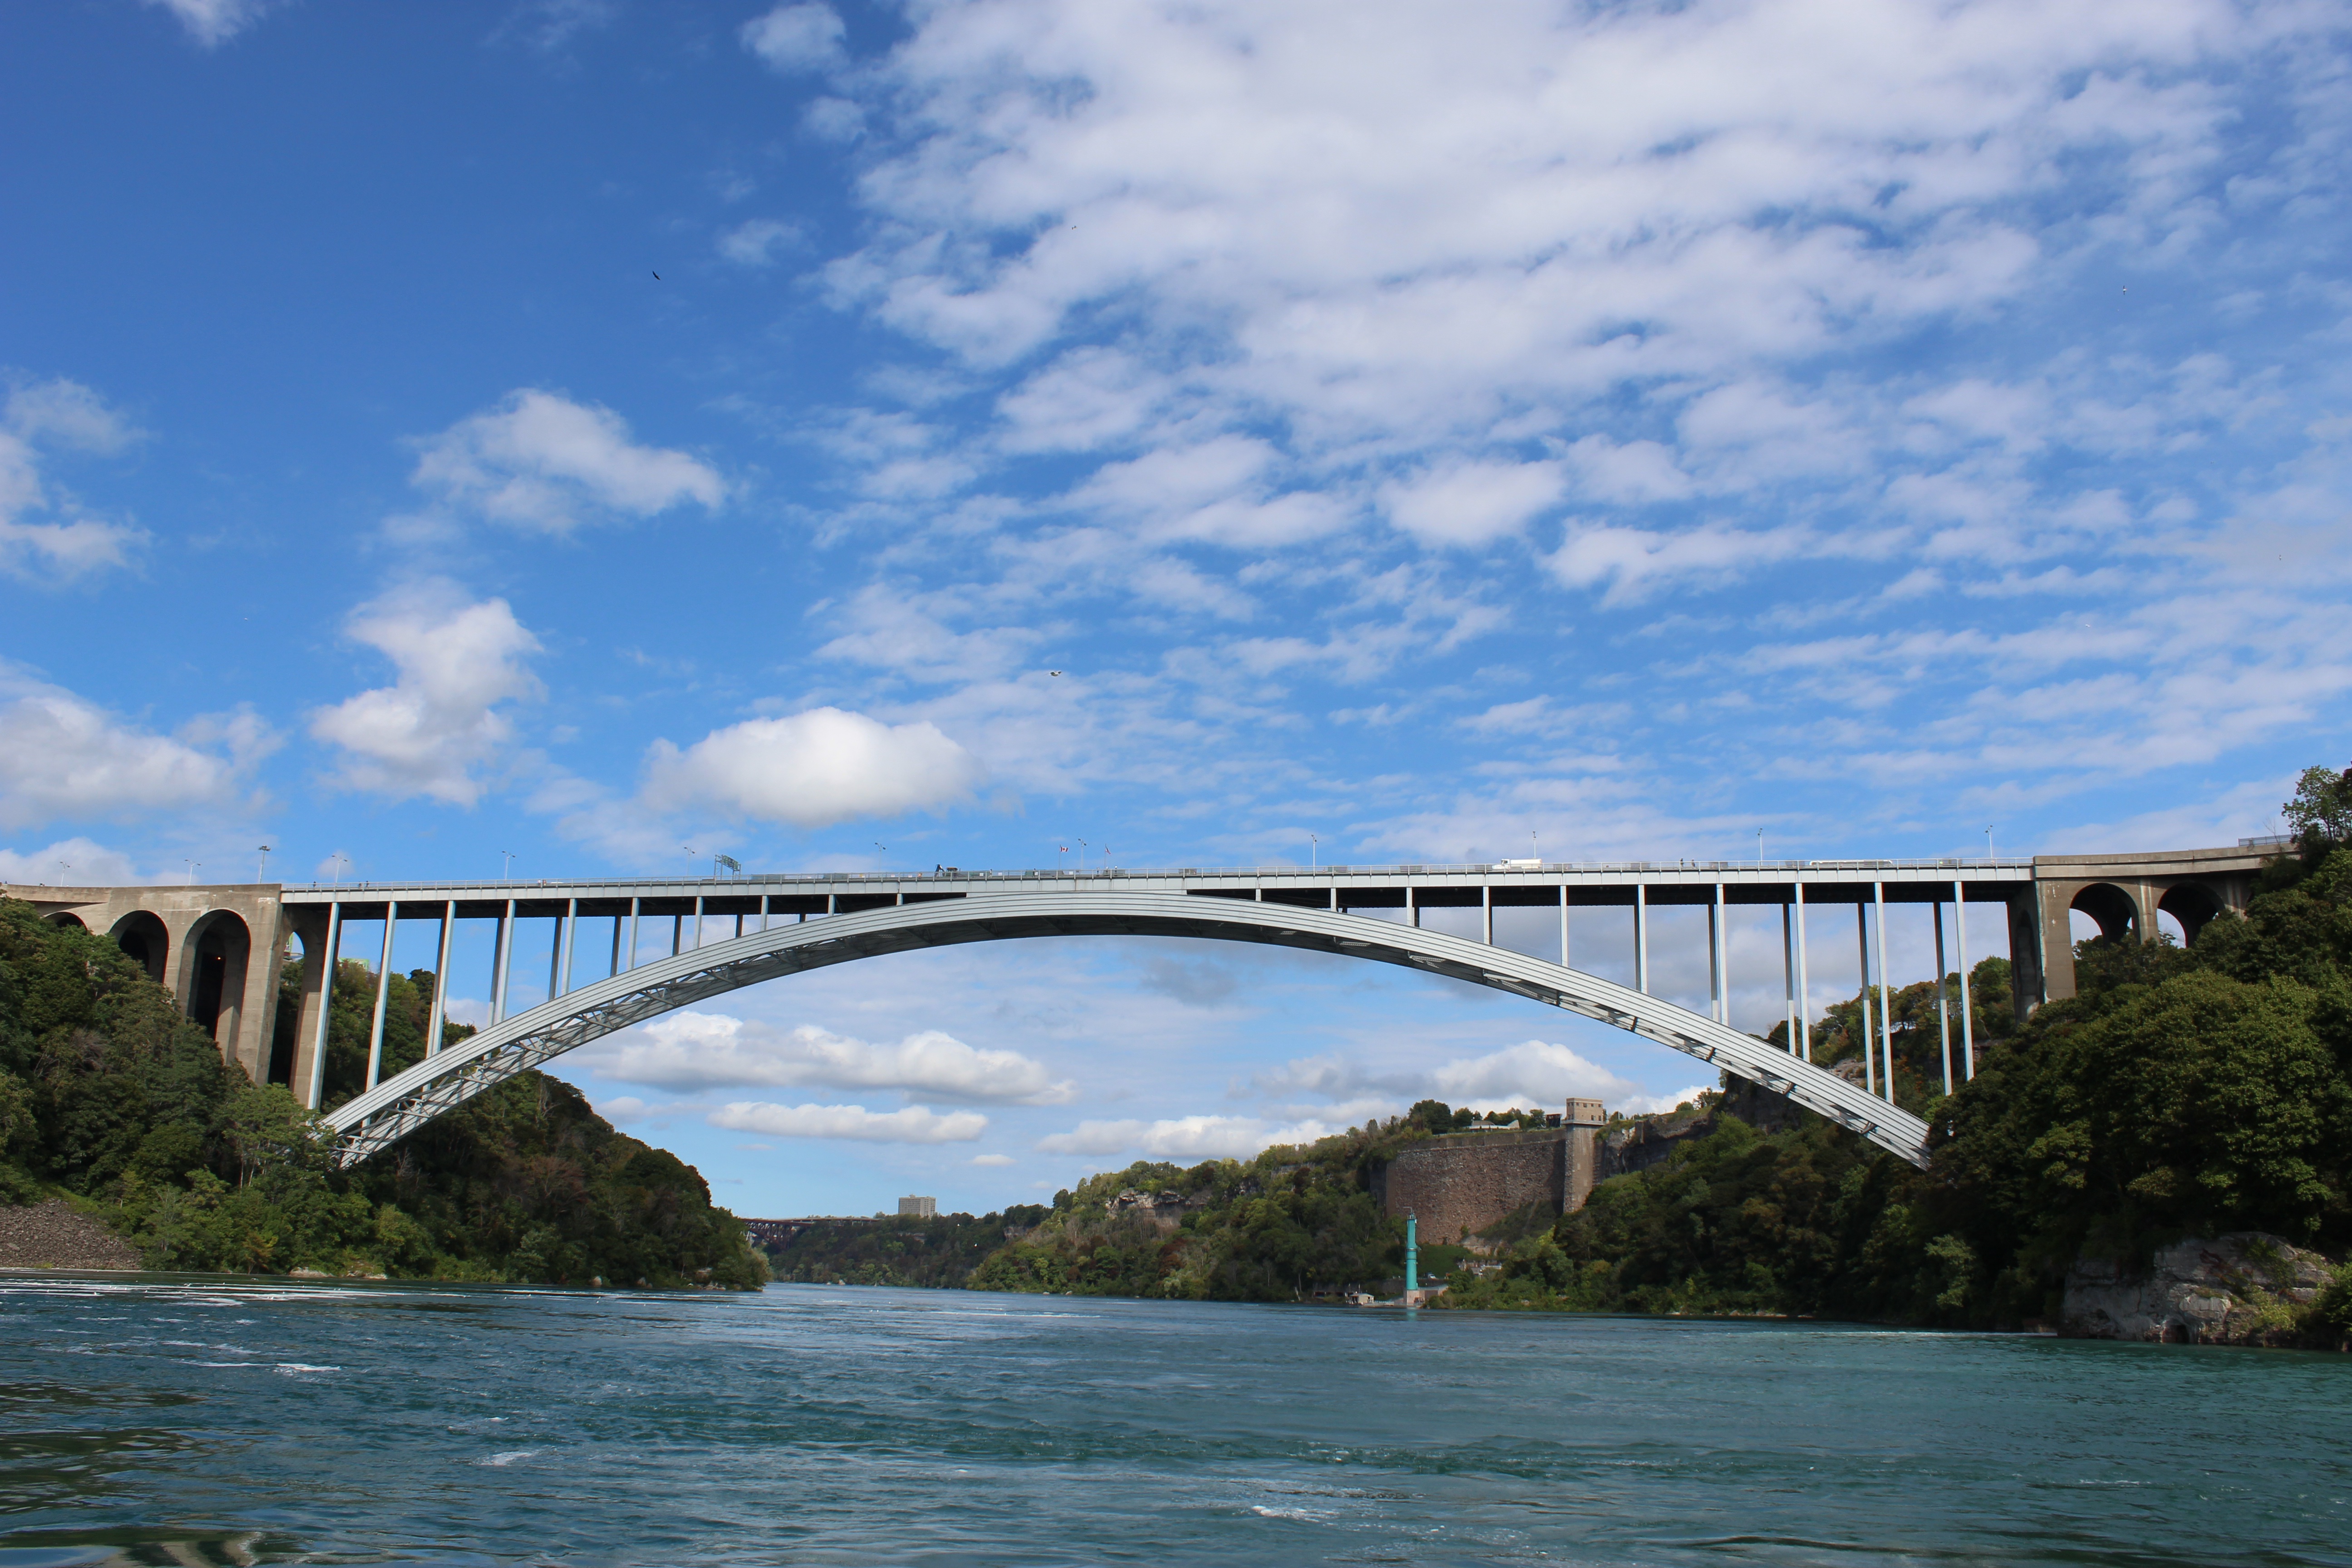 Над мостом. Мост Лагуна Гарсон, Мальдонадо, Уругвай. Мост Ройал-Гордж. Мост над рекой Колумбия Вашингтон. Мост через реку Ниагару в Нью-Йорке..